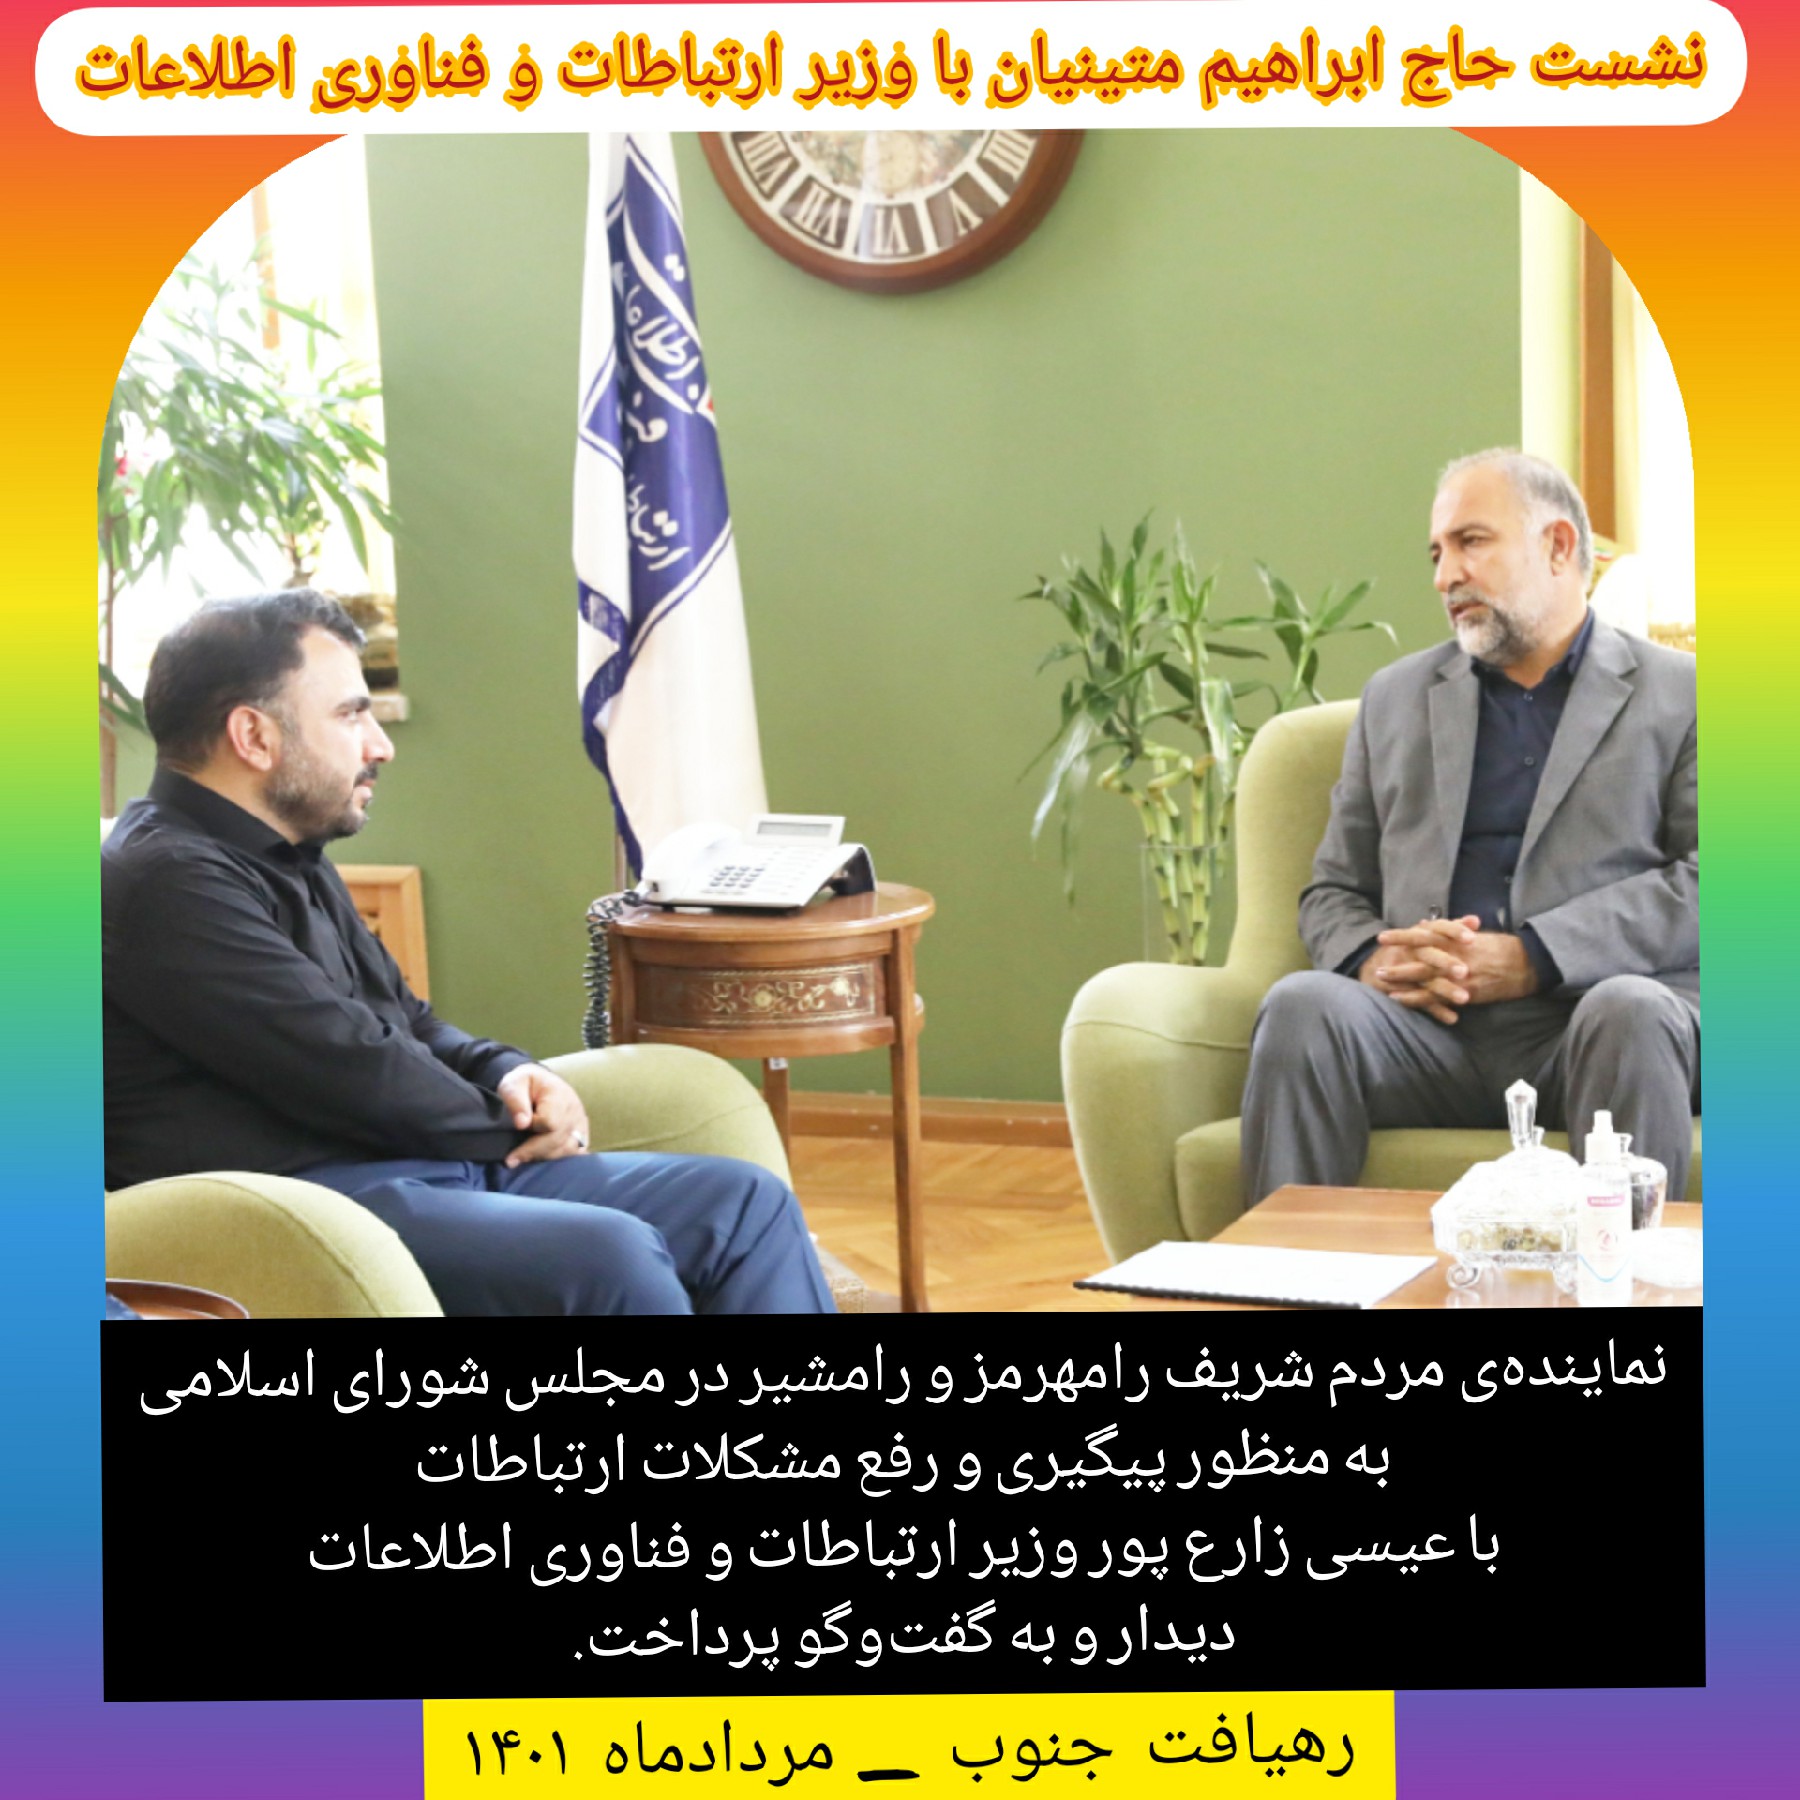 نشست حاج ابراهیم متینیان با وزیر ارتباطات و فناوری اطلاعات